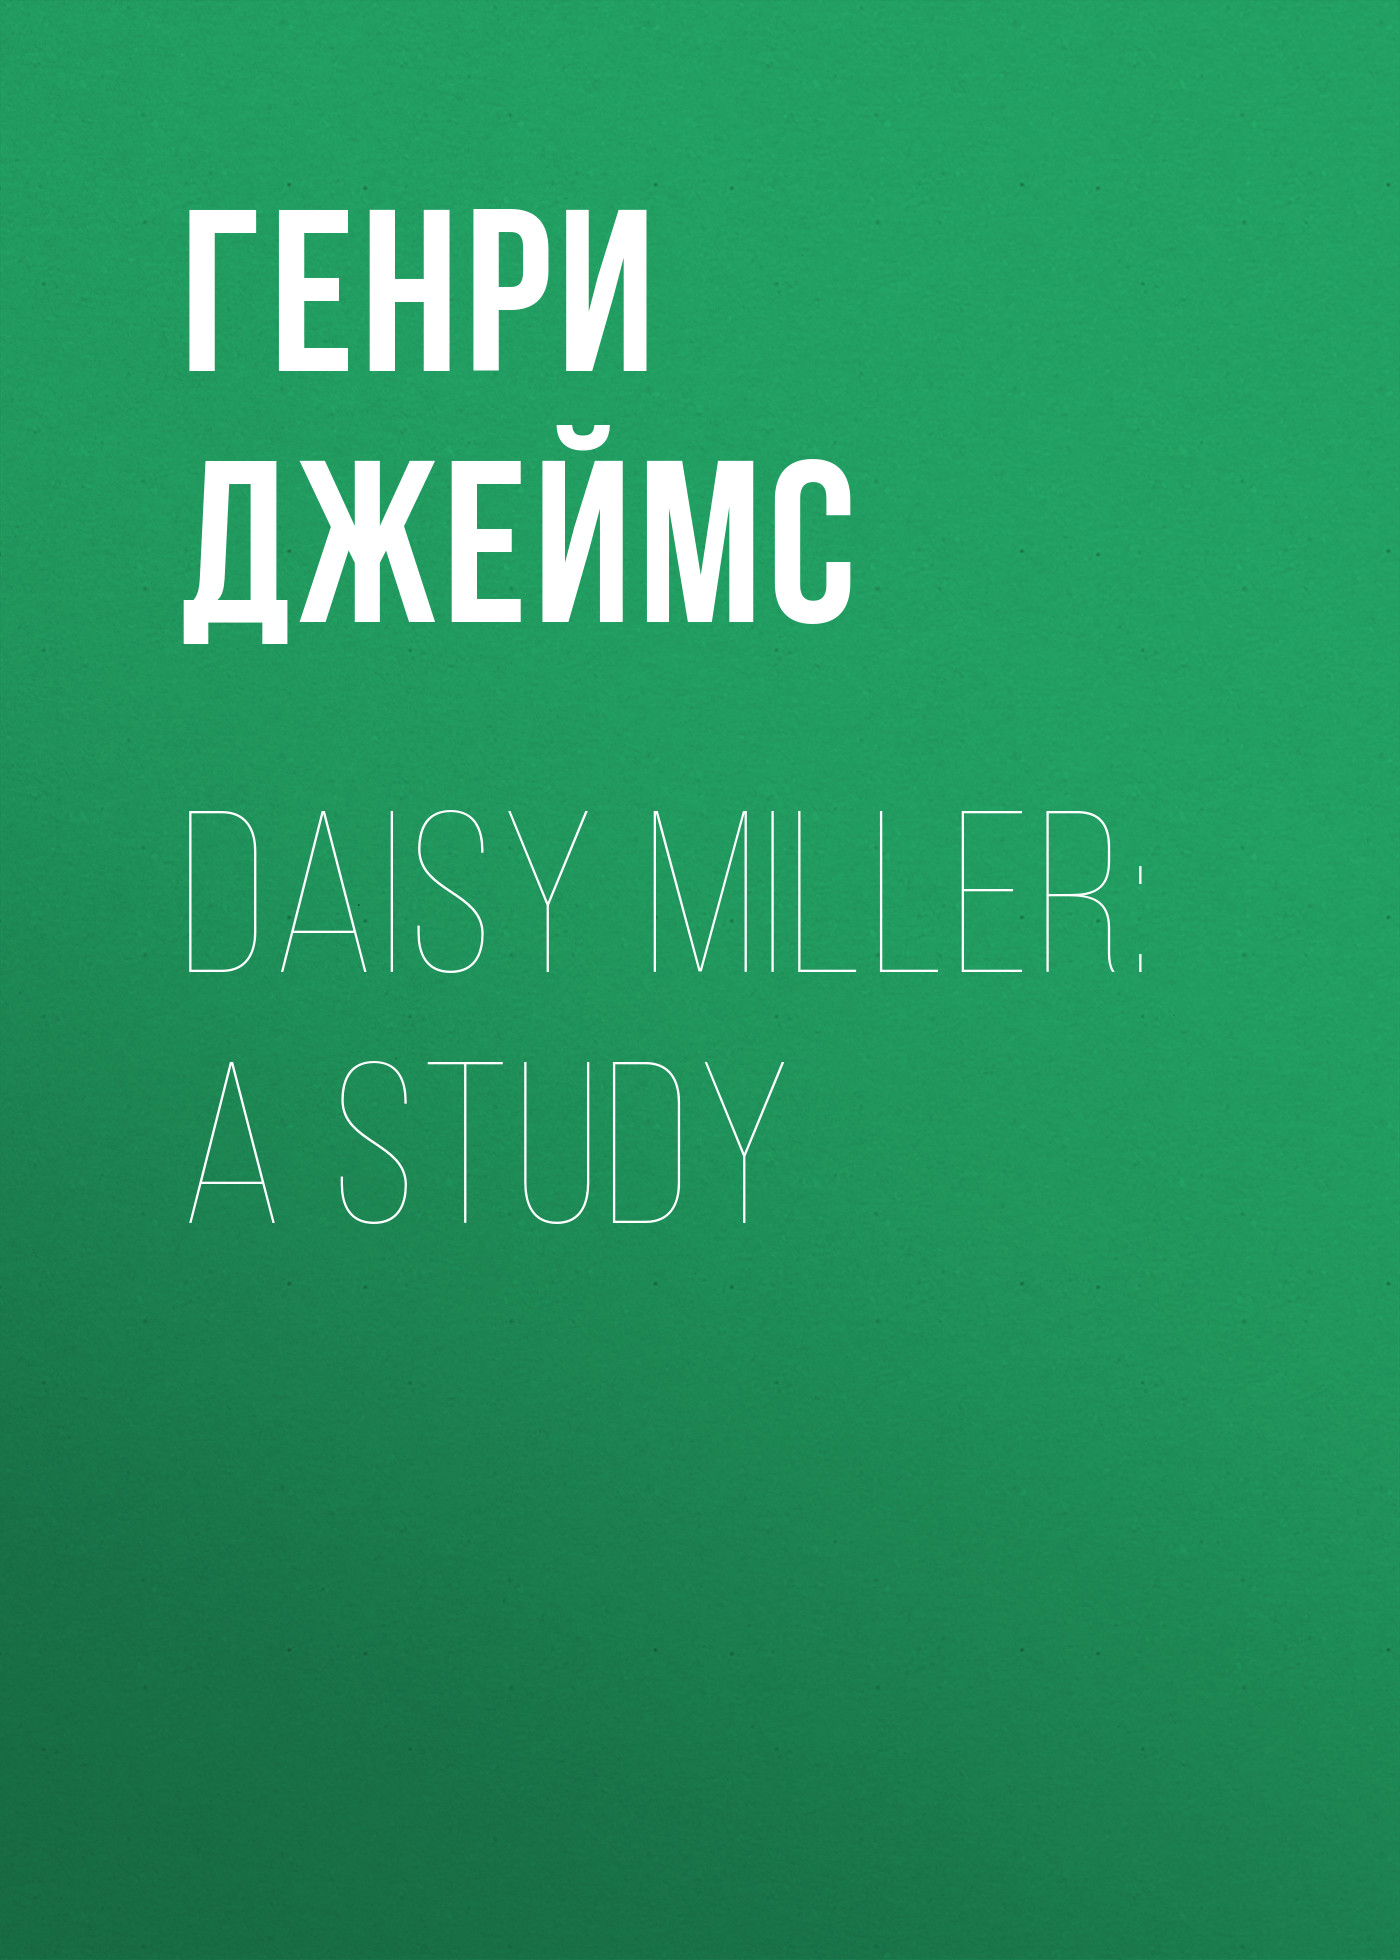 Книга Daisy Miller: A Study из серии , созданная Генри Джеймс, может относится к жанру Социальная фантастика, Зарубежная старинная литература, Зарубежная классика. Стоимость электронной книги Daisy Miller: A Study с идентификатором 34840662 составляет 0 руб.